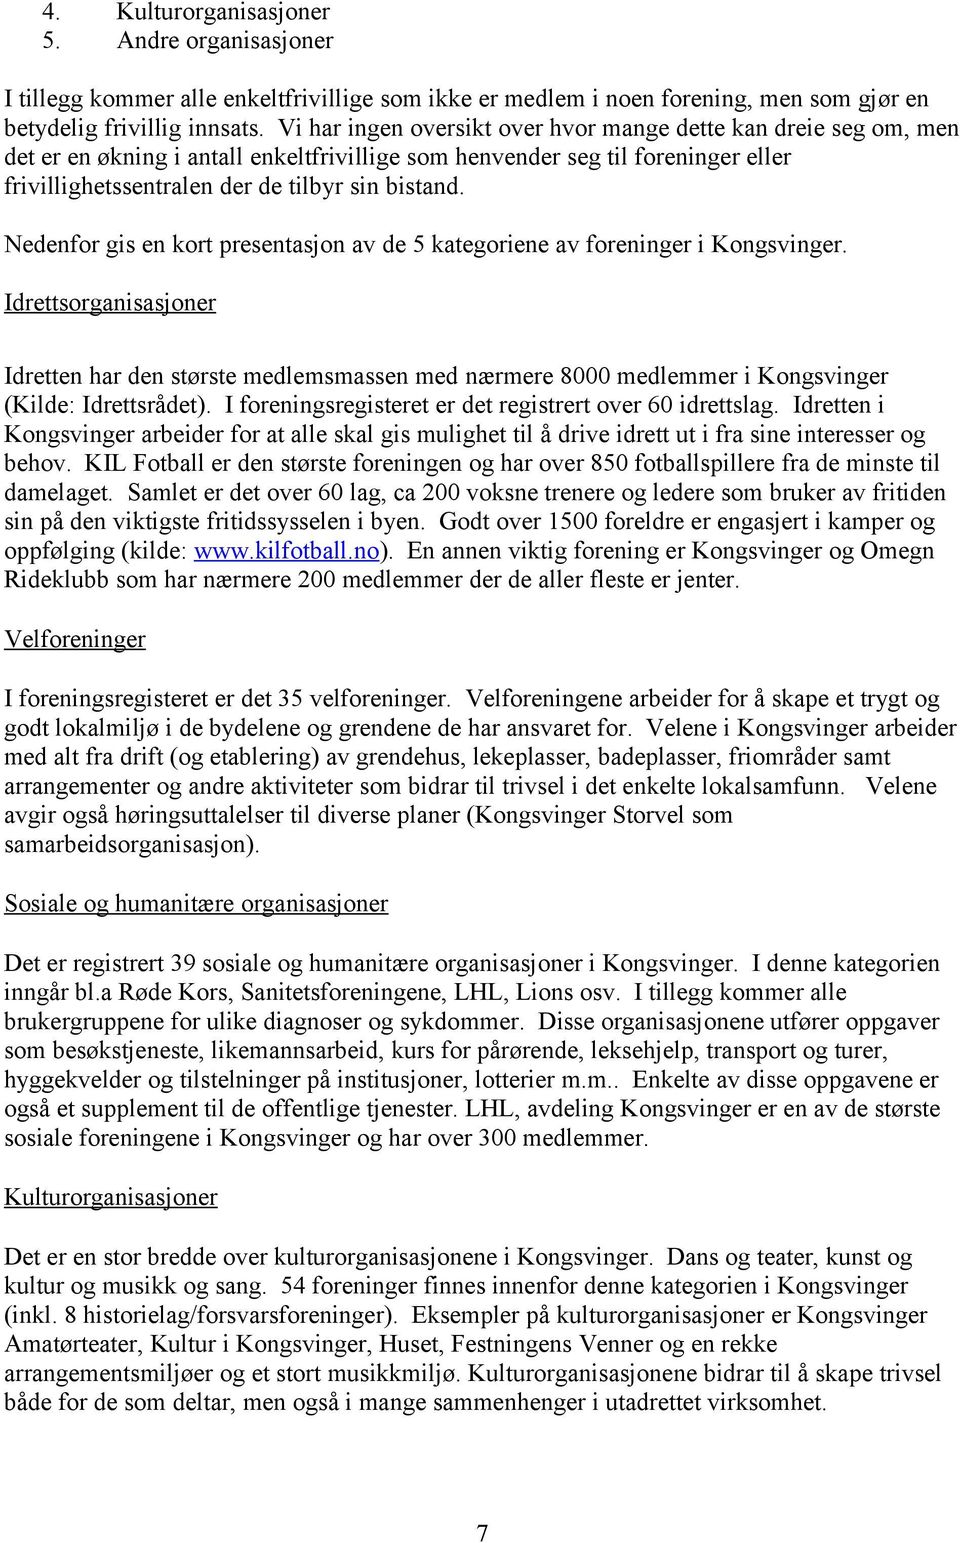 Nedenfor gis en kort presentasjon av de 5 kategoriene av foreninger i Kongsvinger.